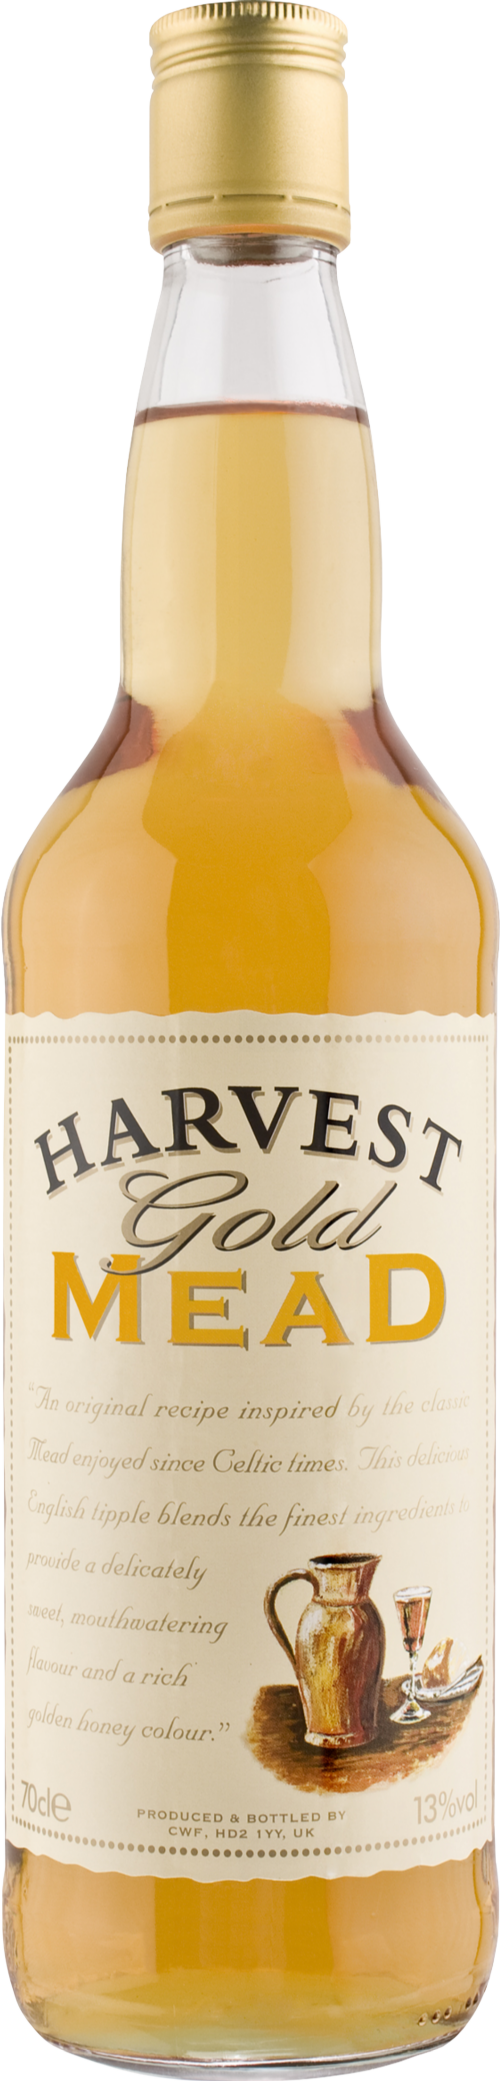 HARVEST GOLD Mead 13% ABV 70cl